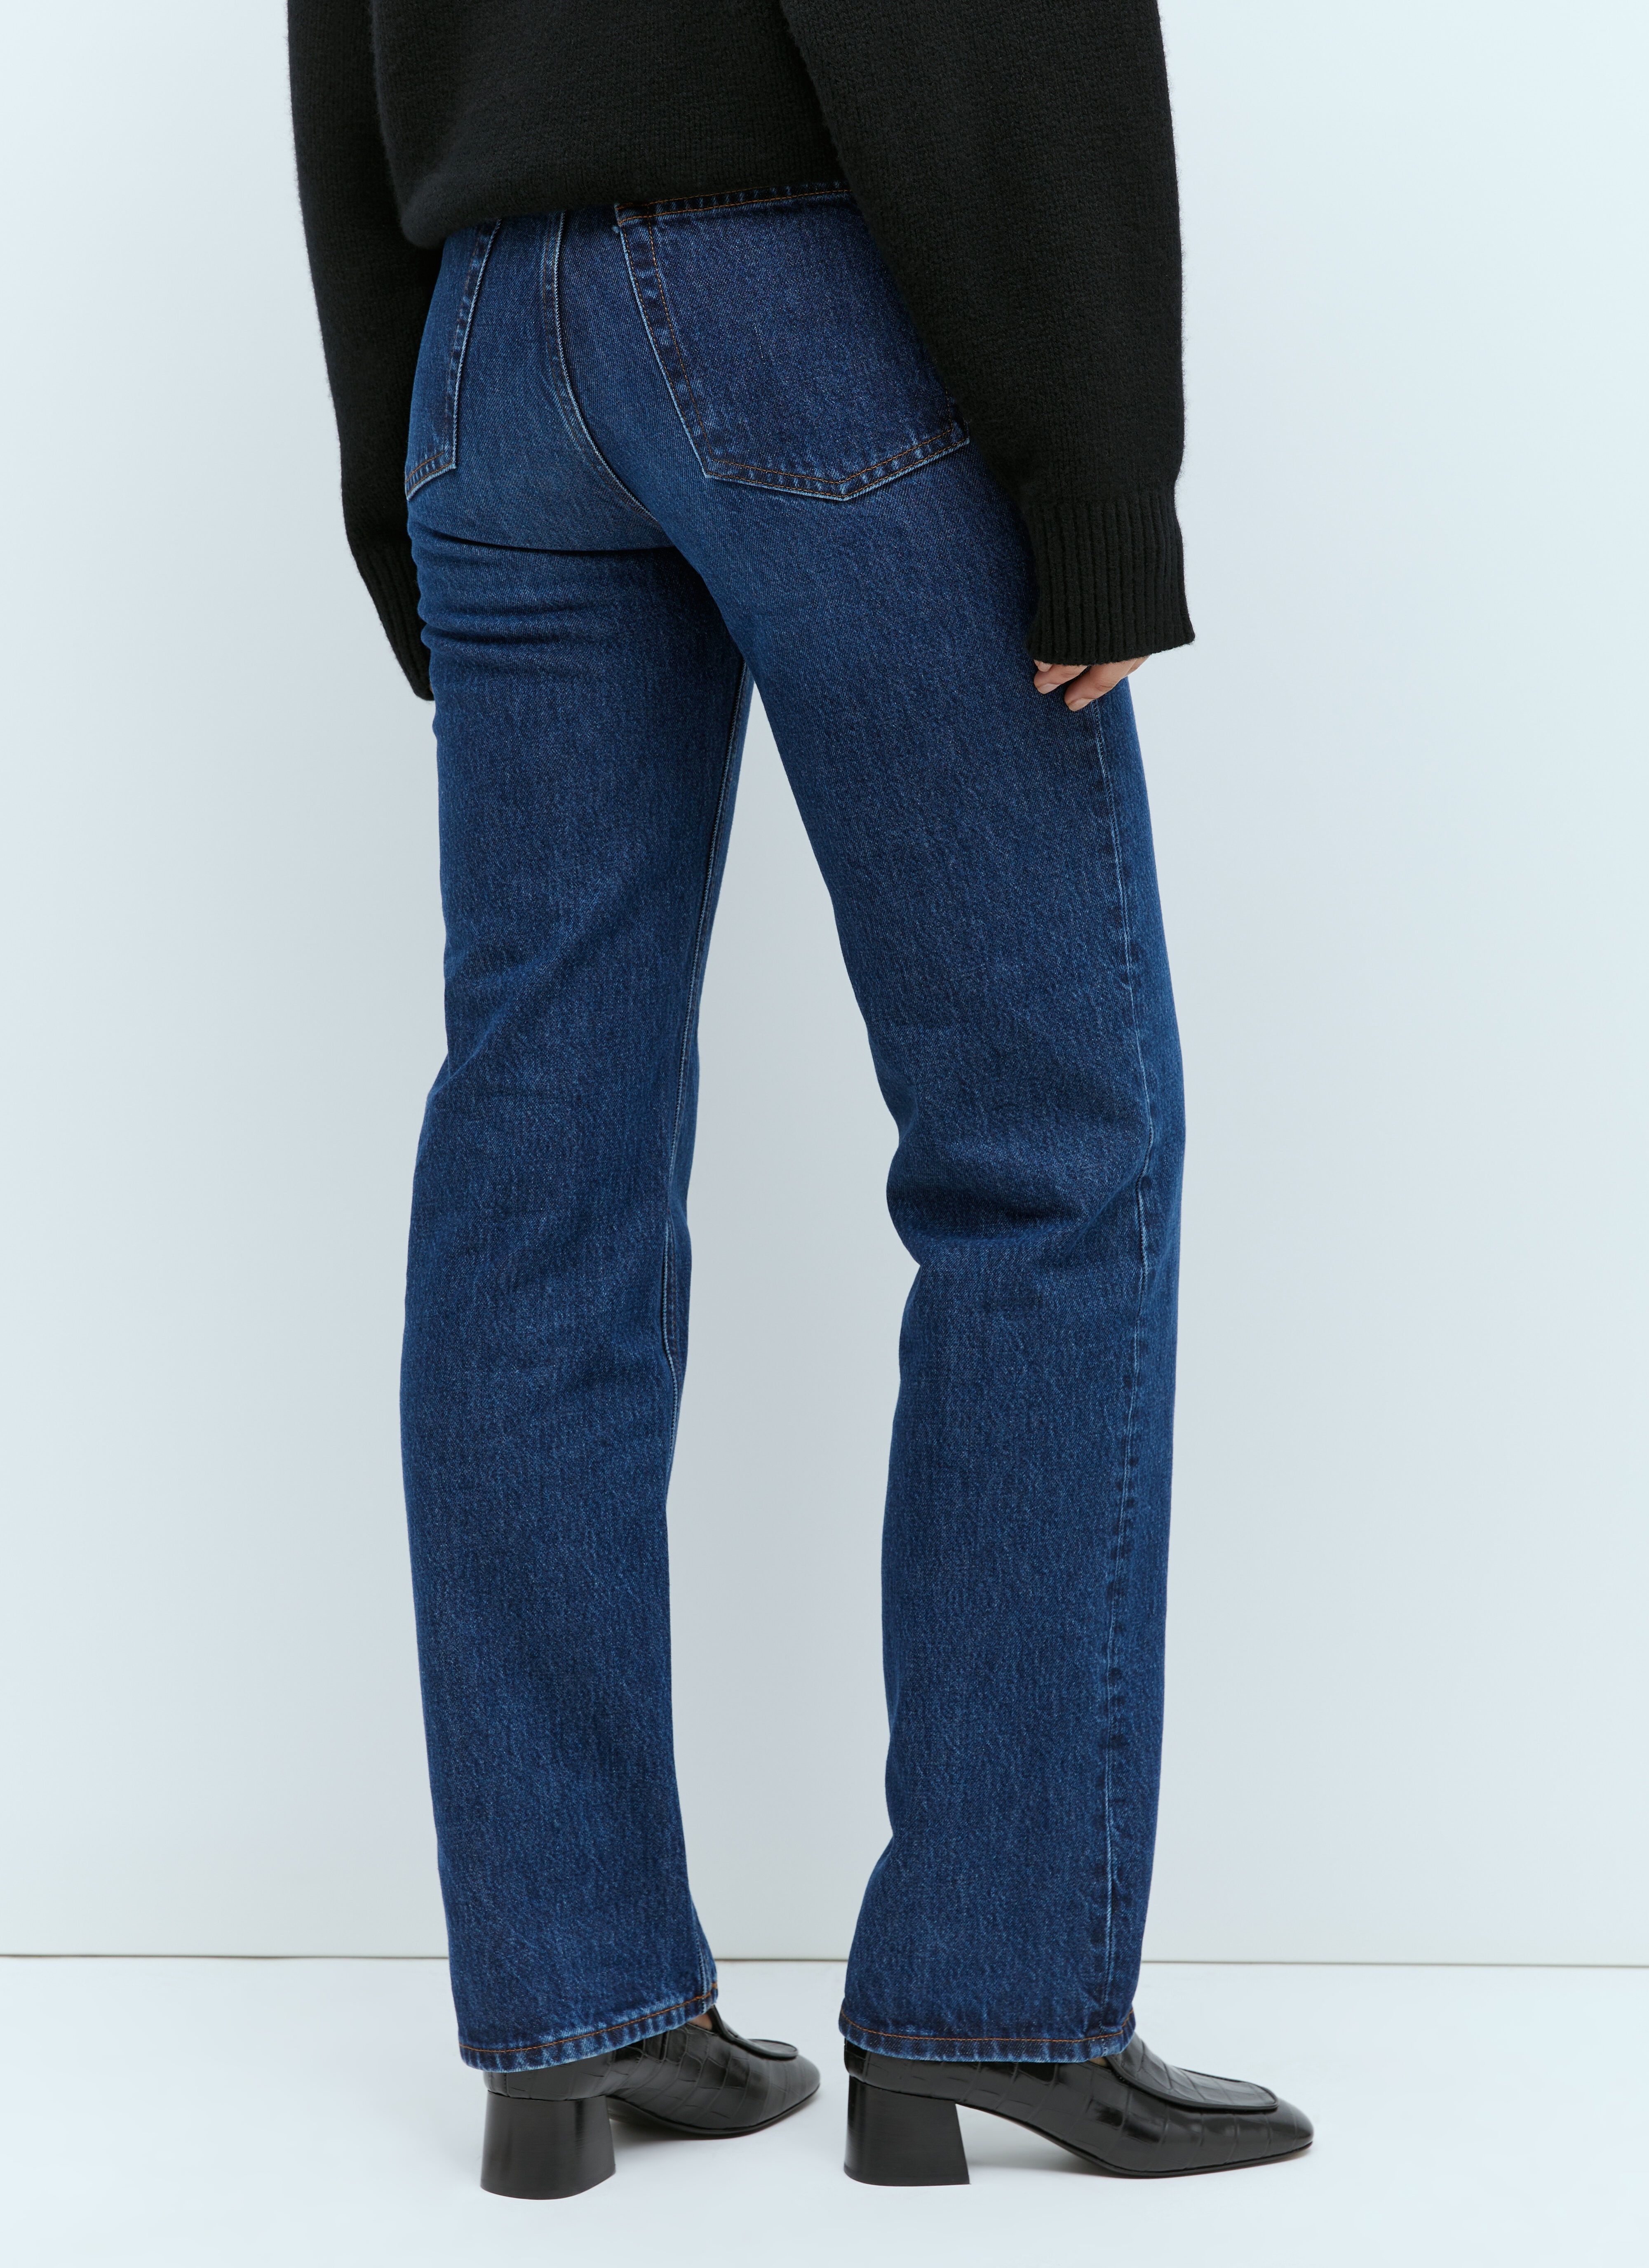 Classic Cut Denim Jeans - 5